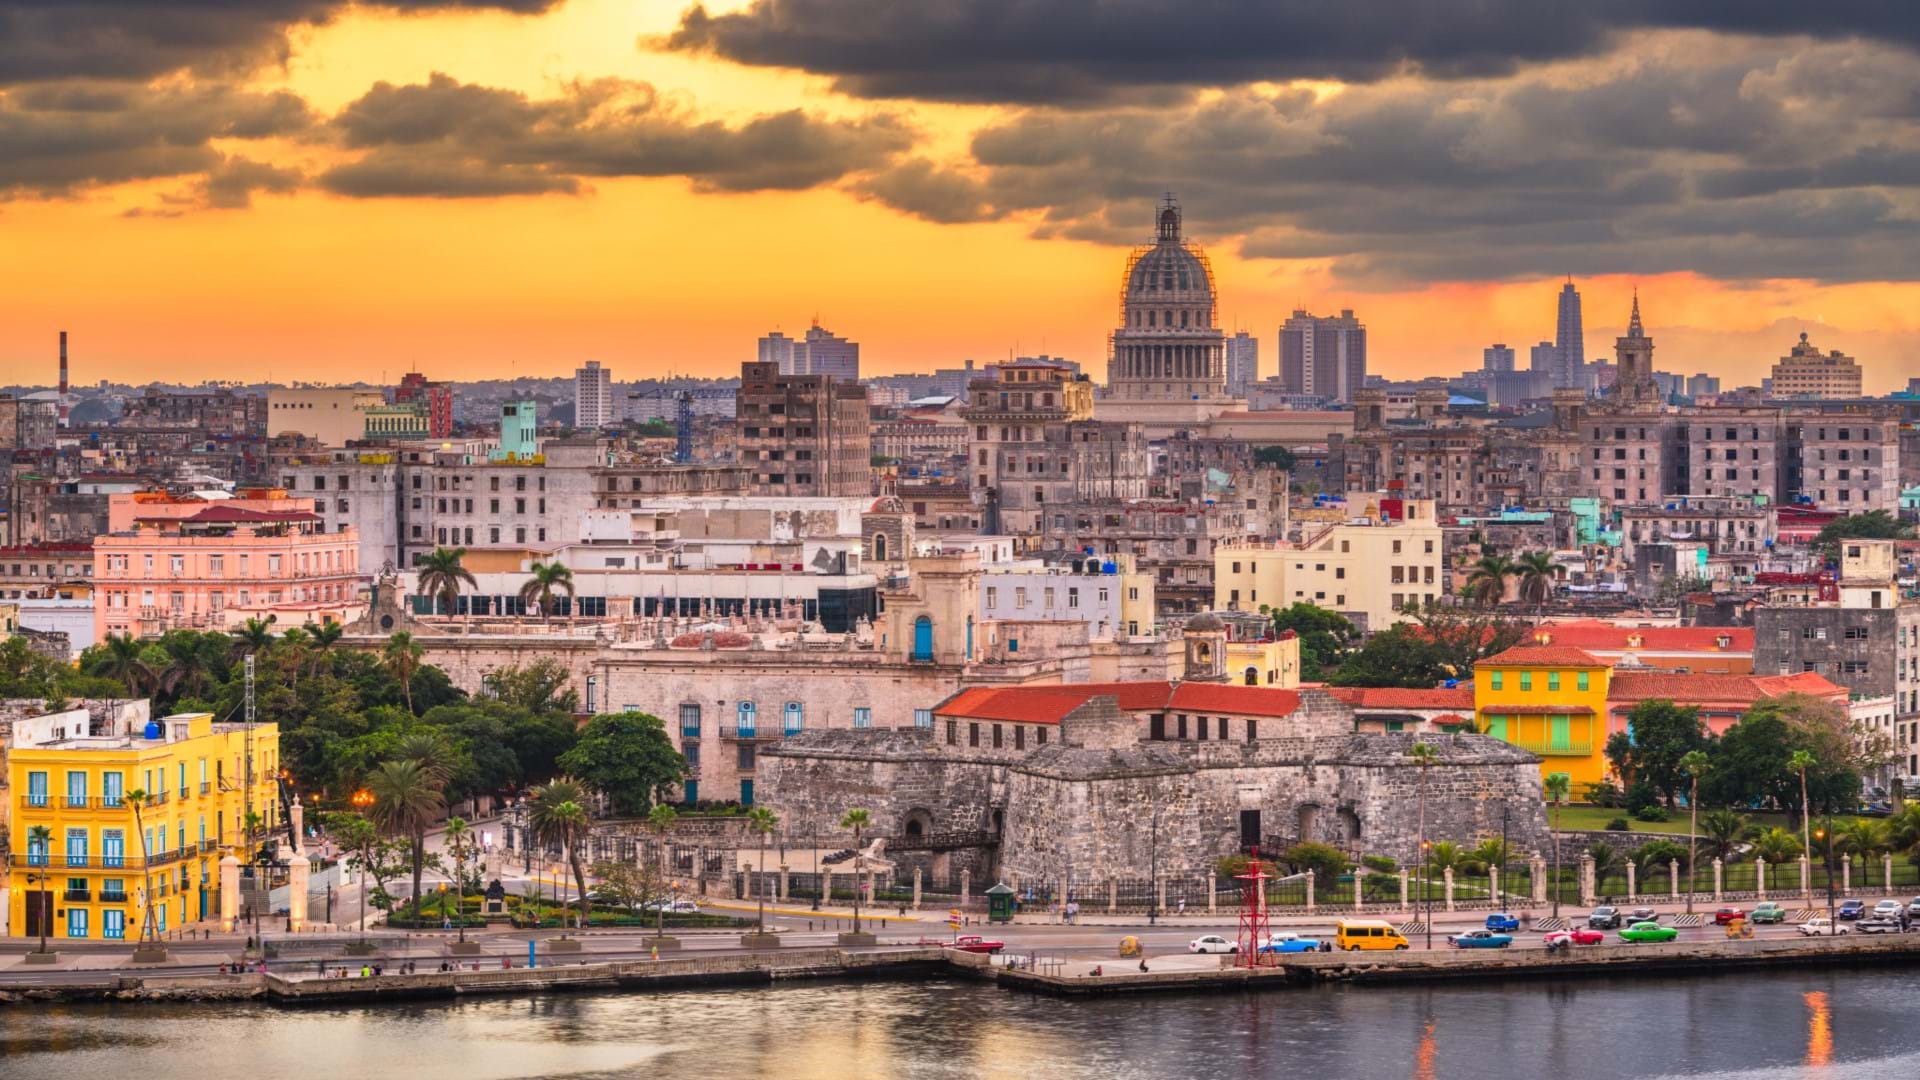 Havana, prestonica Kube, panorama grada, Kapitol, Malekon, stari grad, fasade i zgrade stare Havane.